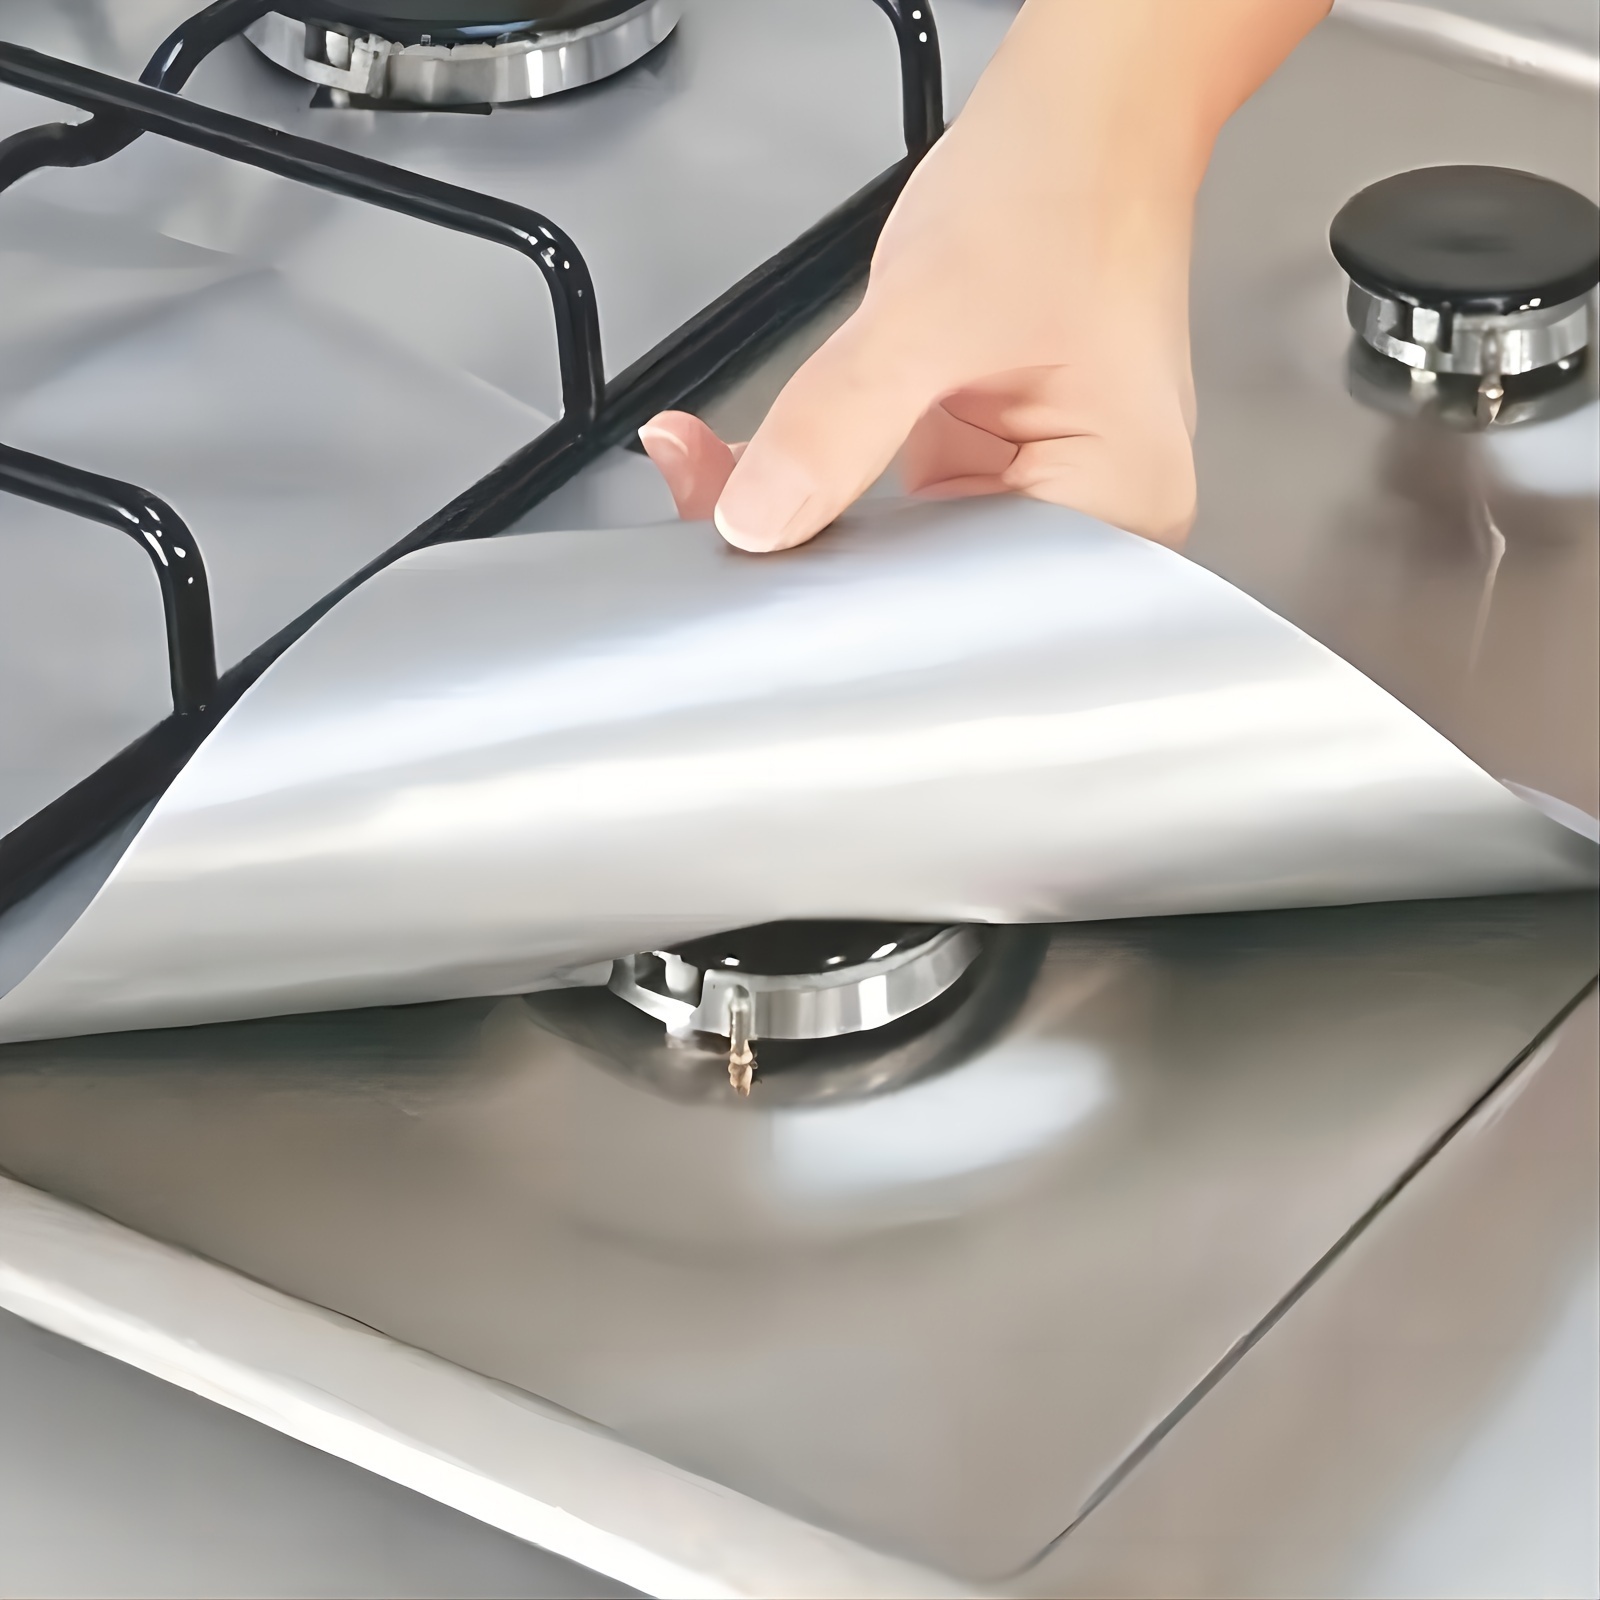  Herramientas de cocina – Protector de pantalla para estufa de  gas, placa de aluminio para cocina, evita salpicaduras de aceite,  protección antisalpicaduras, separador de aceite. : Hogar y Cocina